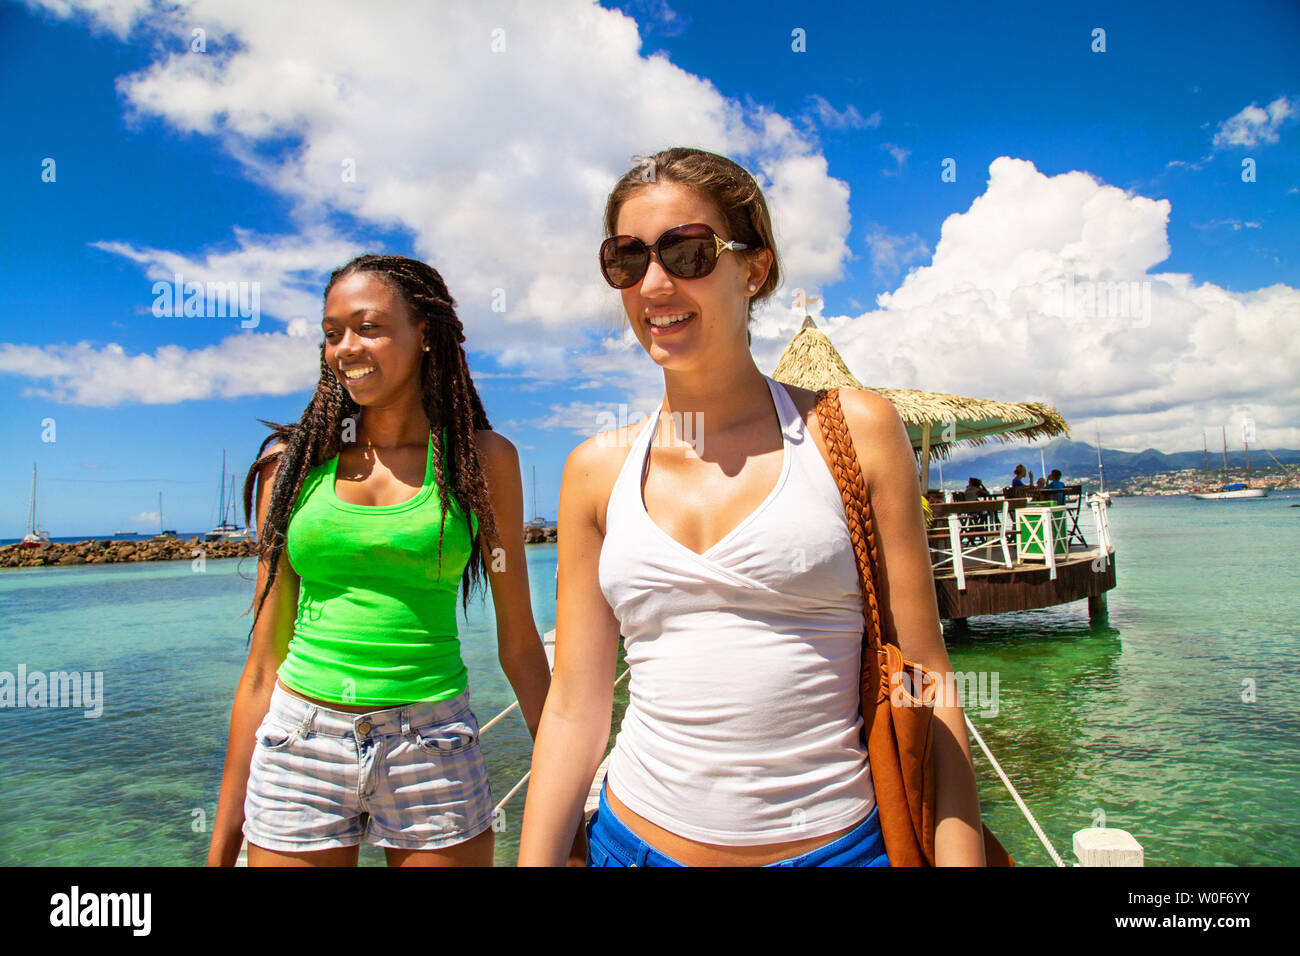 2 amiche sorridenti a camminare su una passerella proveniente da un bar su palafitte su una spiaggia caraibica in un paesaggio paradisiaco. Foto Stock